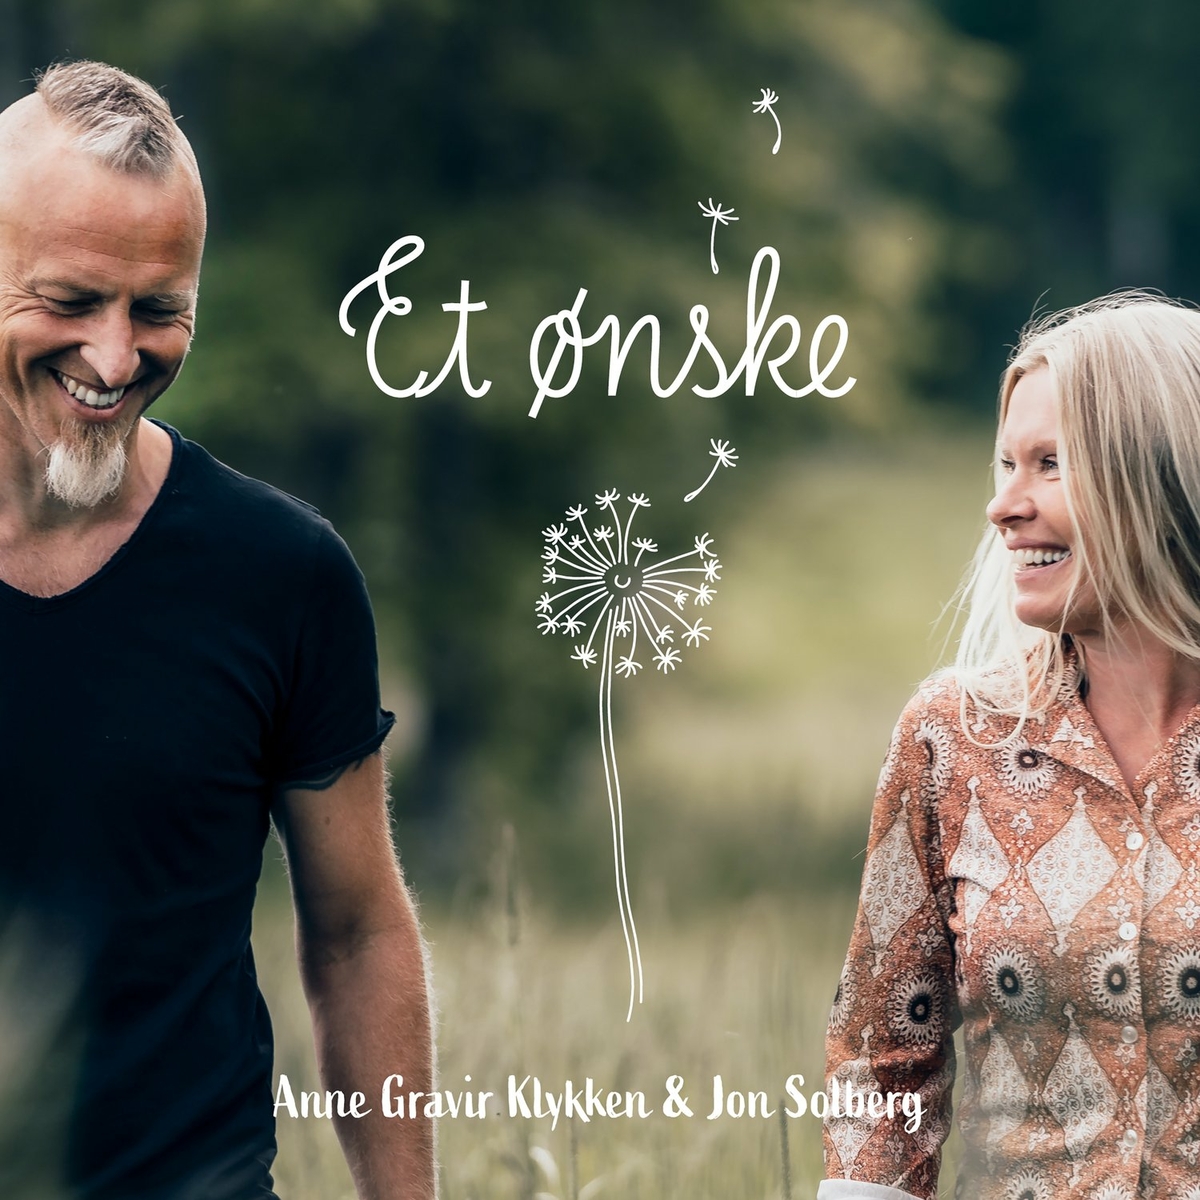 Anne Gravir Klykken & Jon Solberg - Et ønske (onske) - 2022 (Folk Singer & Songwriter)